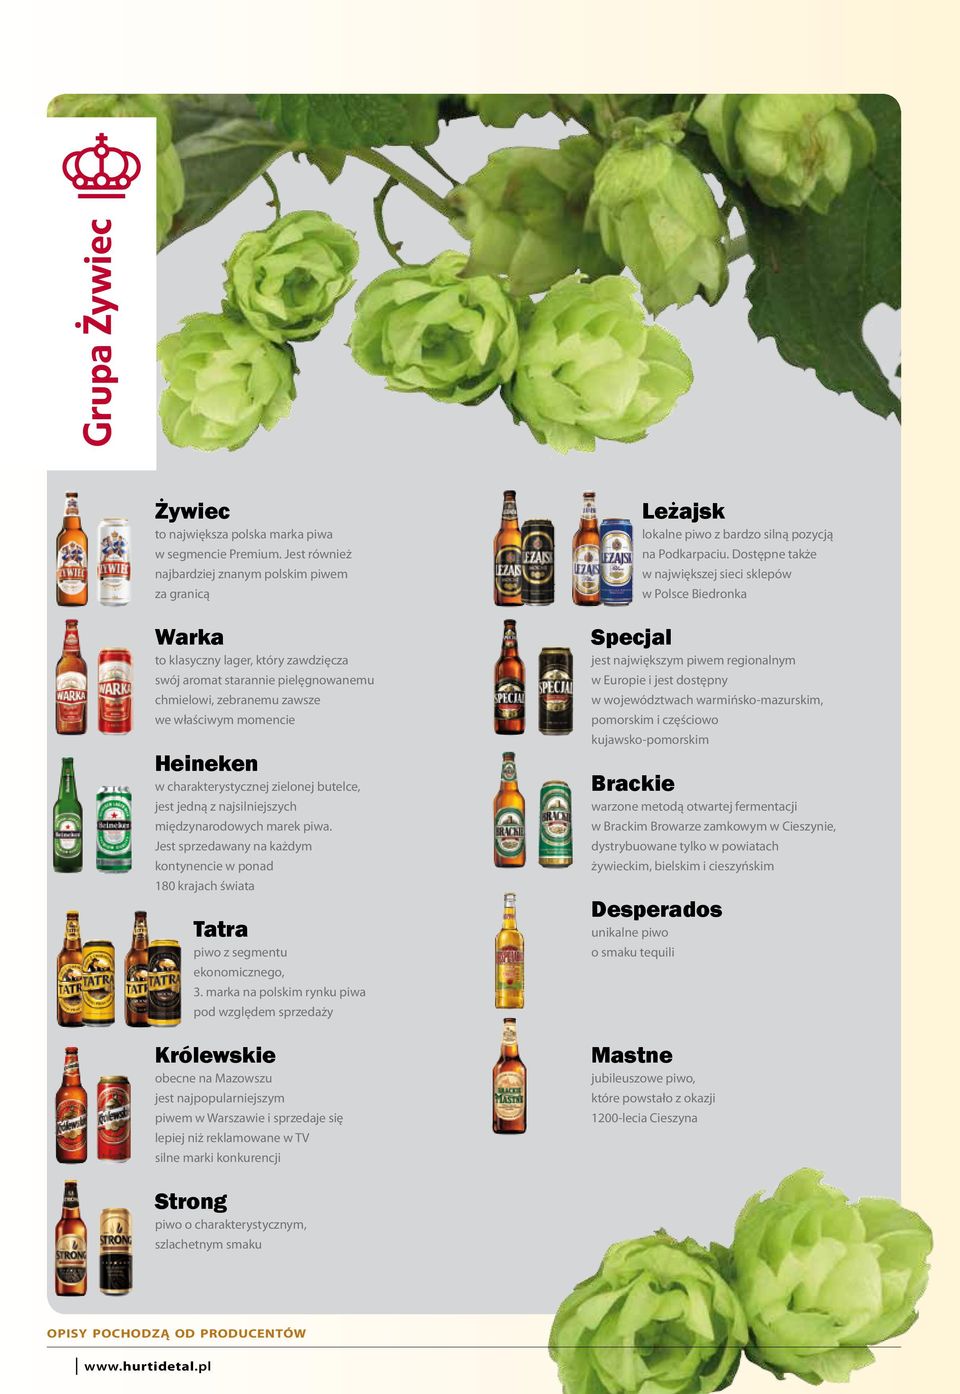 charakterystycznej zielonej butelce, jest jedną z najsilniejszych międzynarodowych marek piwa. Jest sprzedawany na każdym kontynencie w ponad 180 krajach świata Tatra piwo z segmentu ekonomicznego, 3.